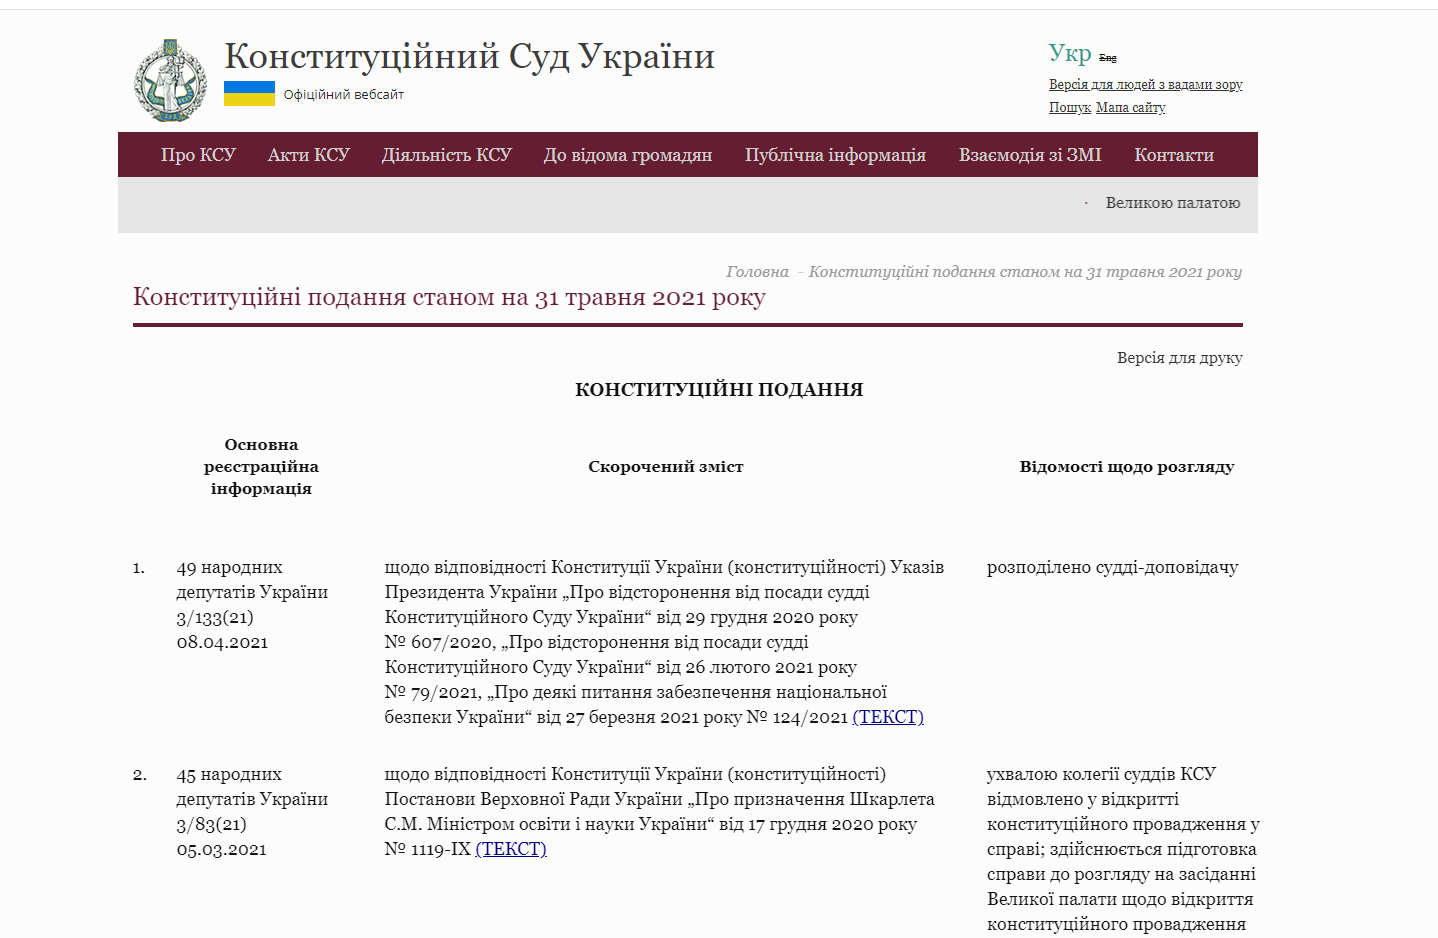 https://ccu.gov.ua/novyna/konstytuciyni-podannya-stanom-na-31-travnya-2021-roku